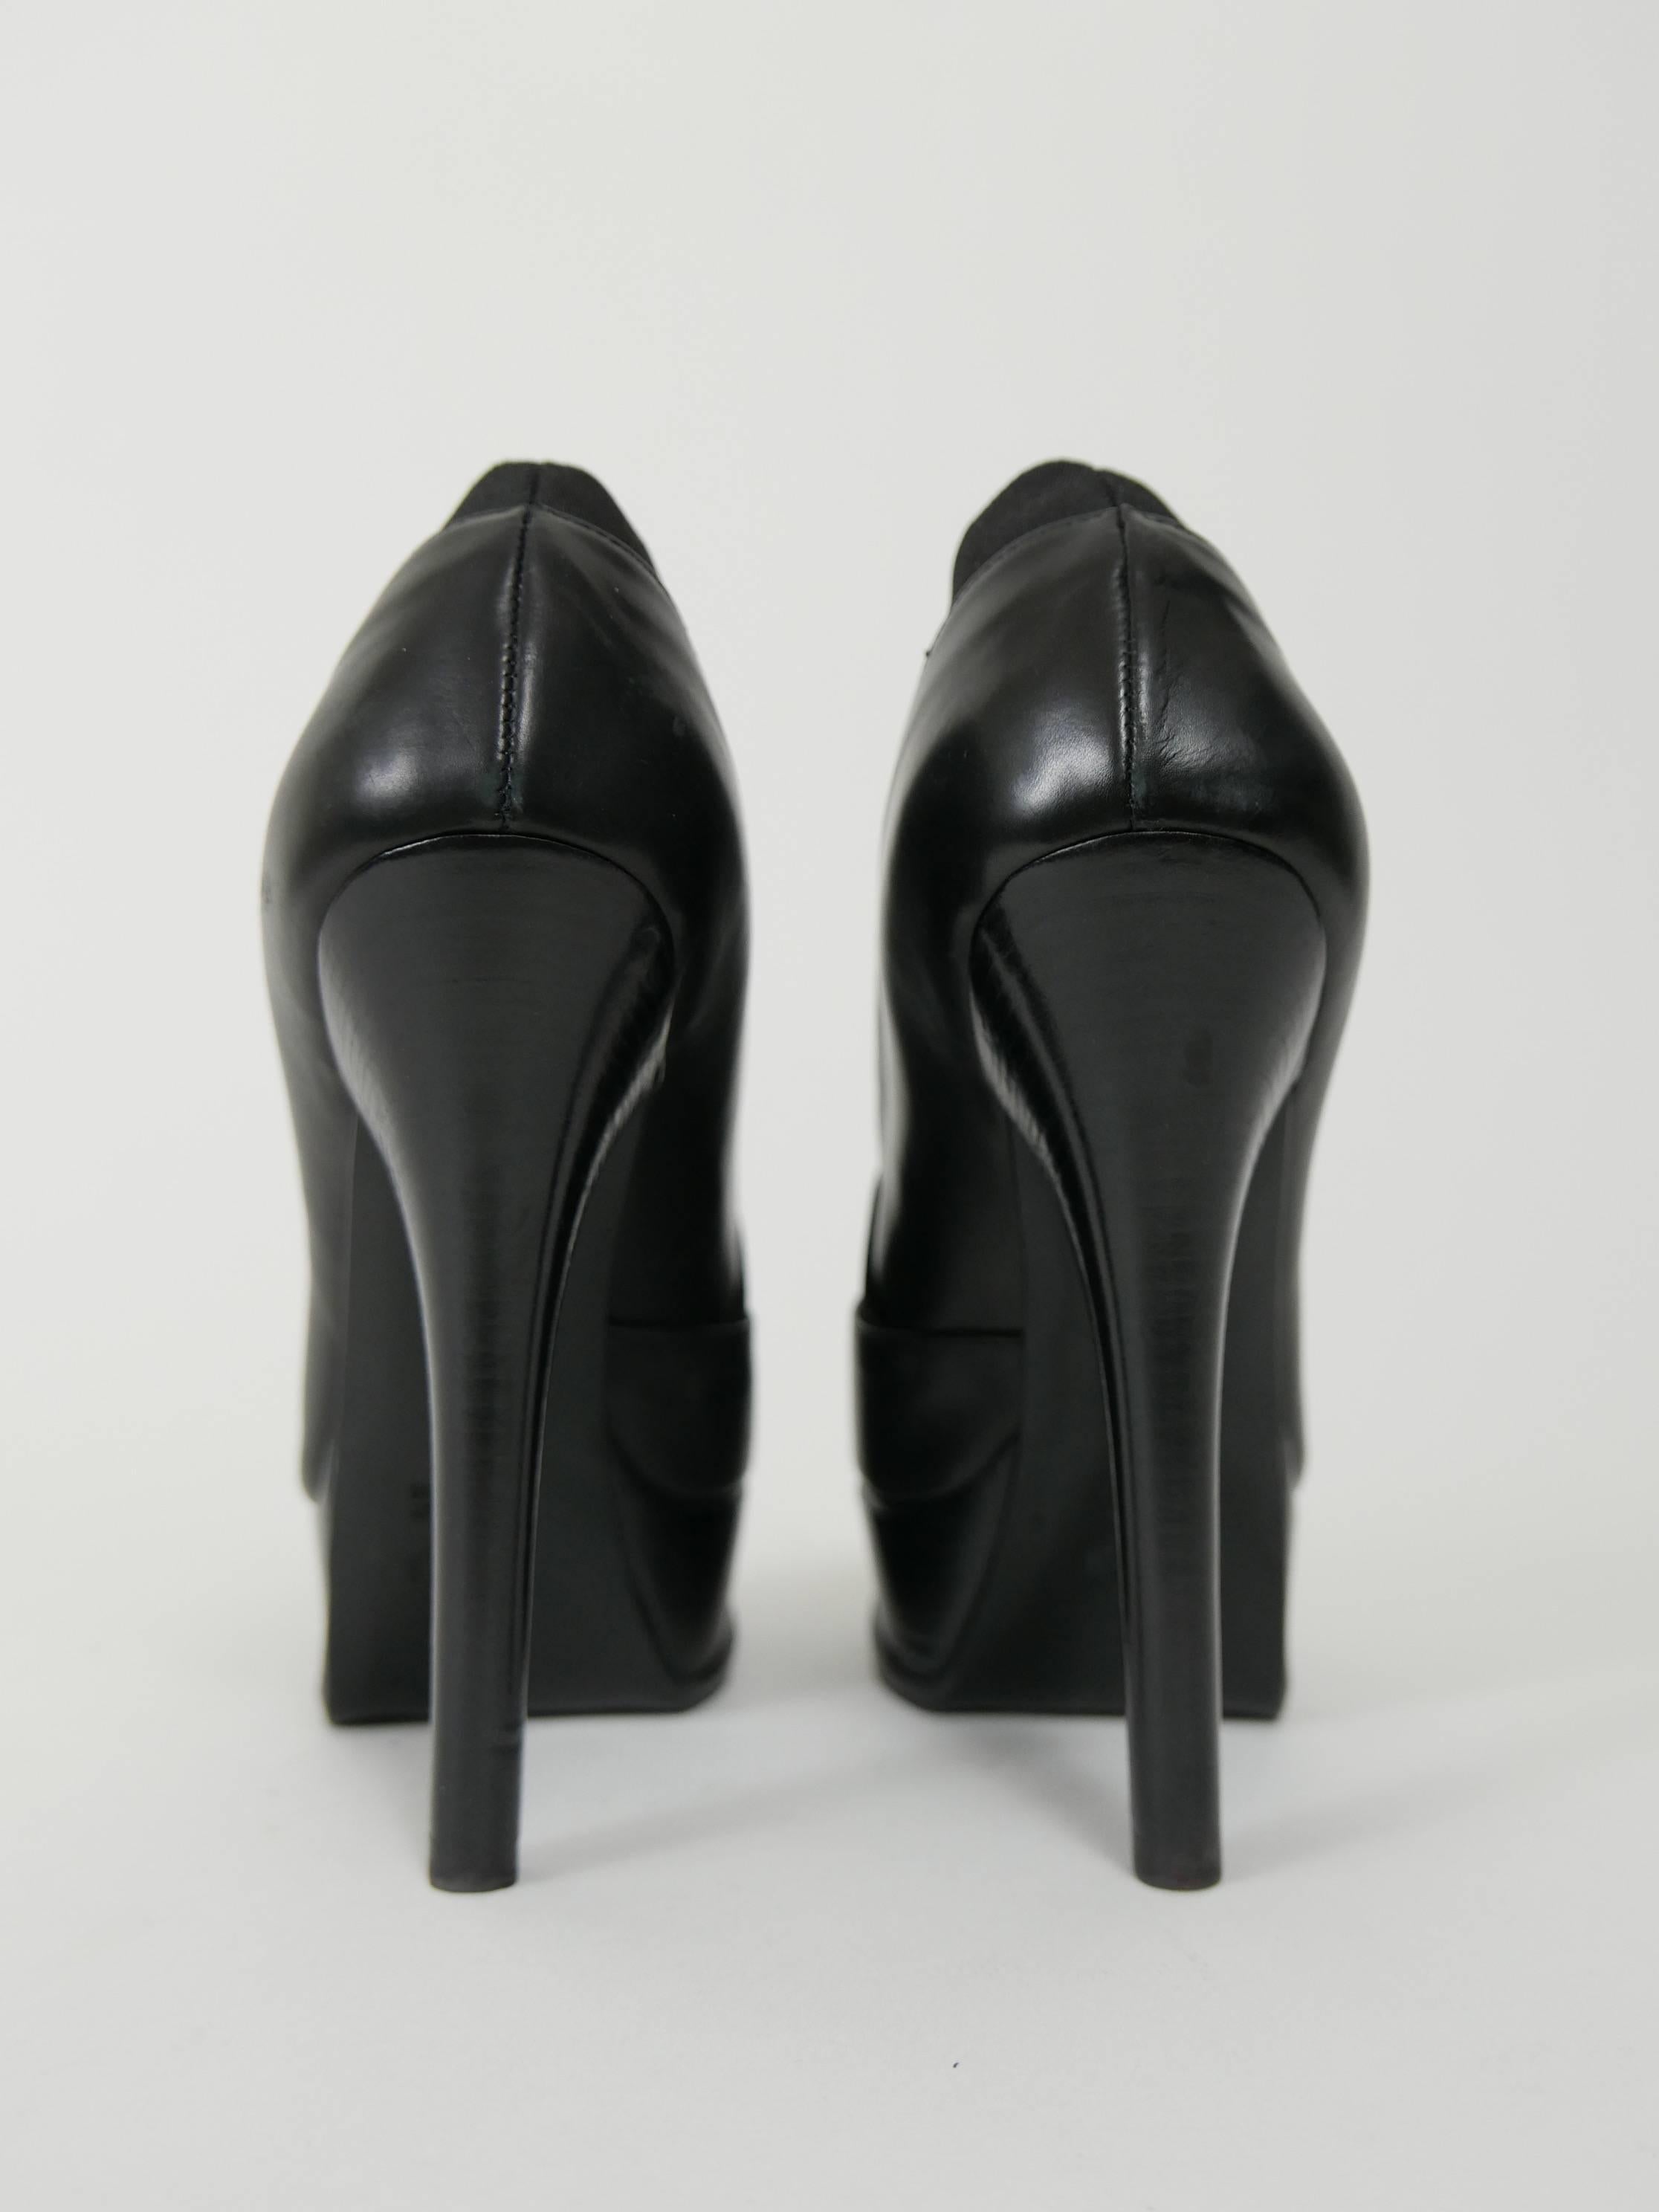 Black FENDI black Leather Platform High Heels Ankle Boots